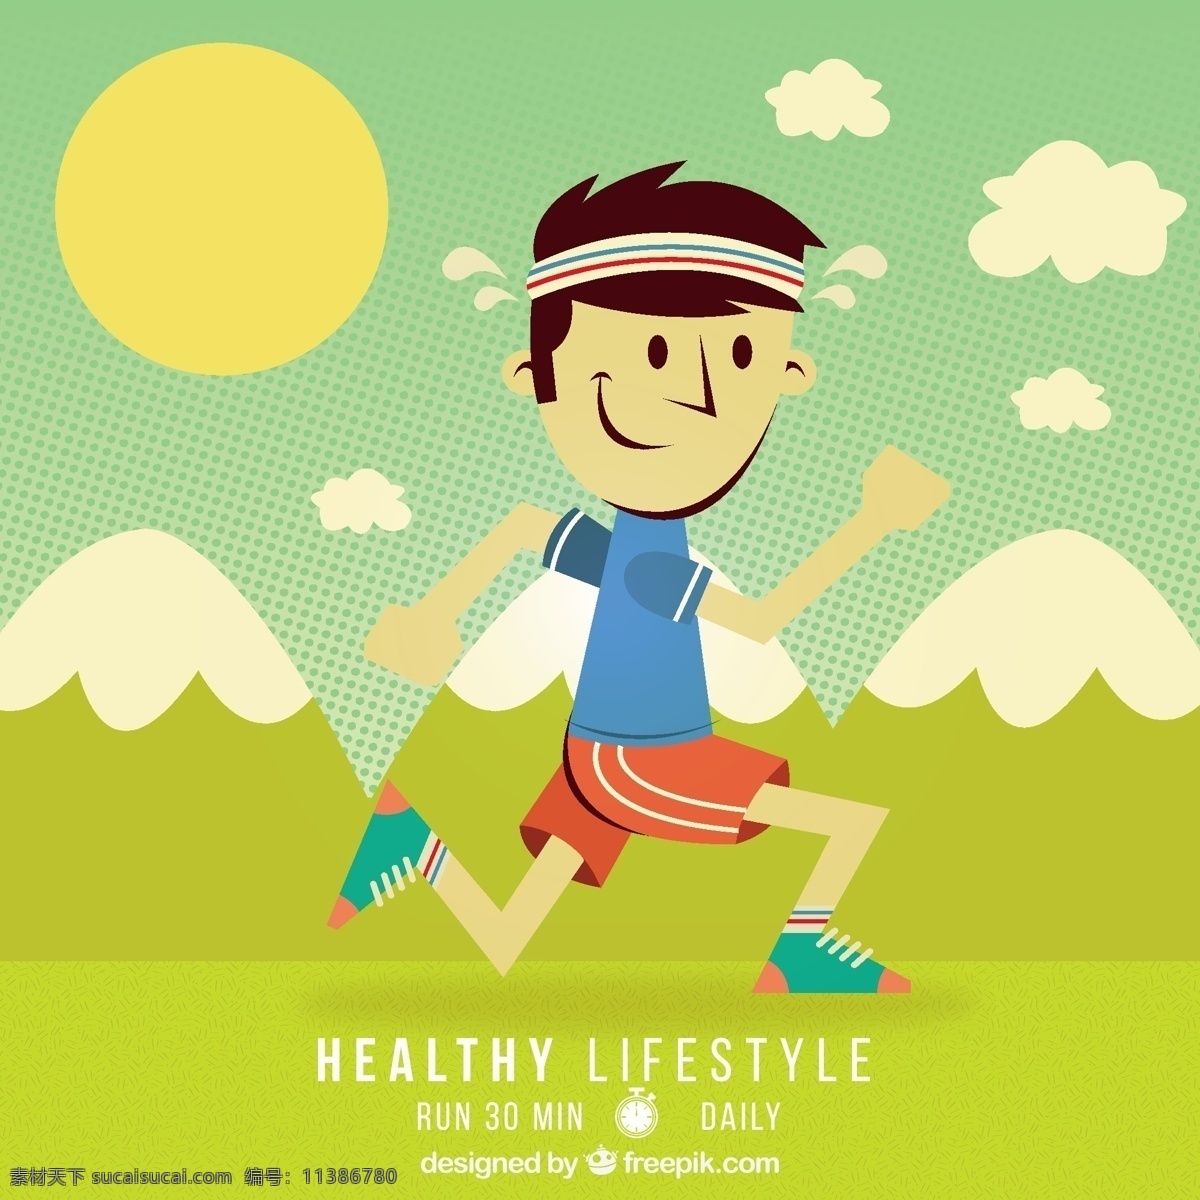 健康 生活方式 运动 男人 卡通 运行 亚军 插图 风格 跑步